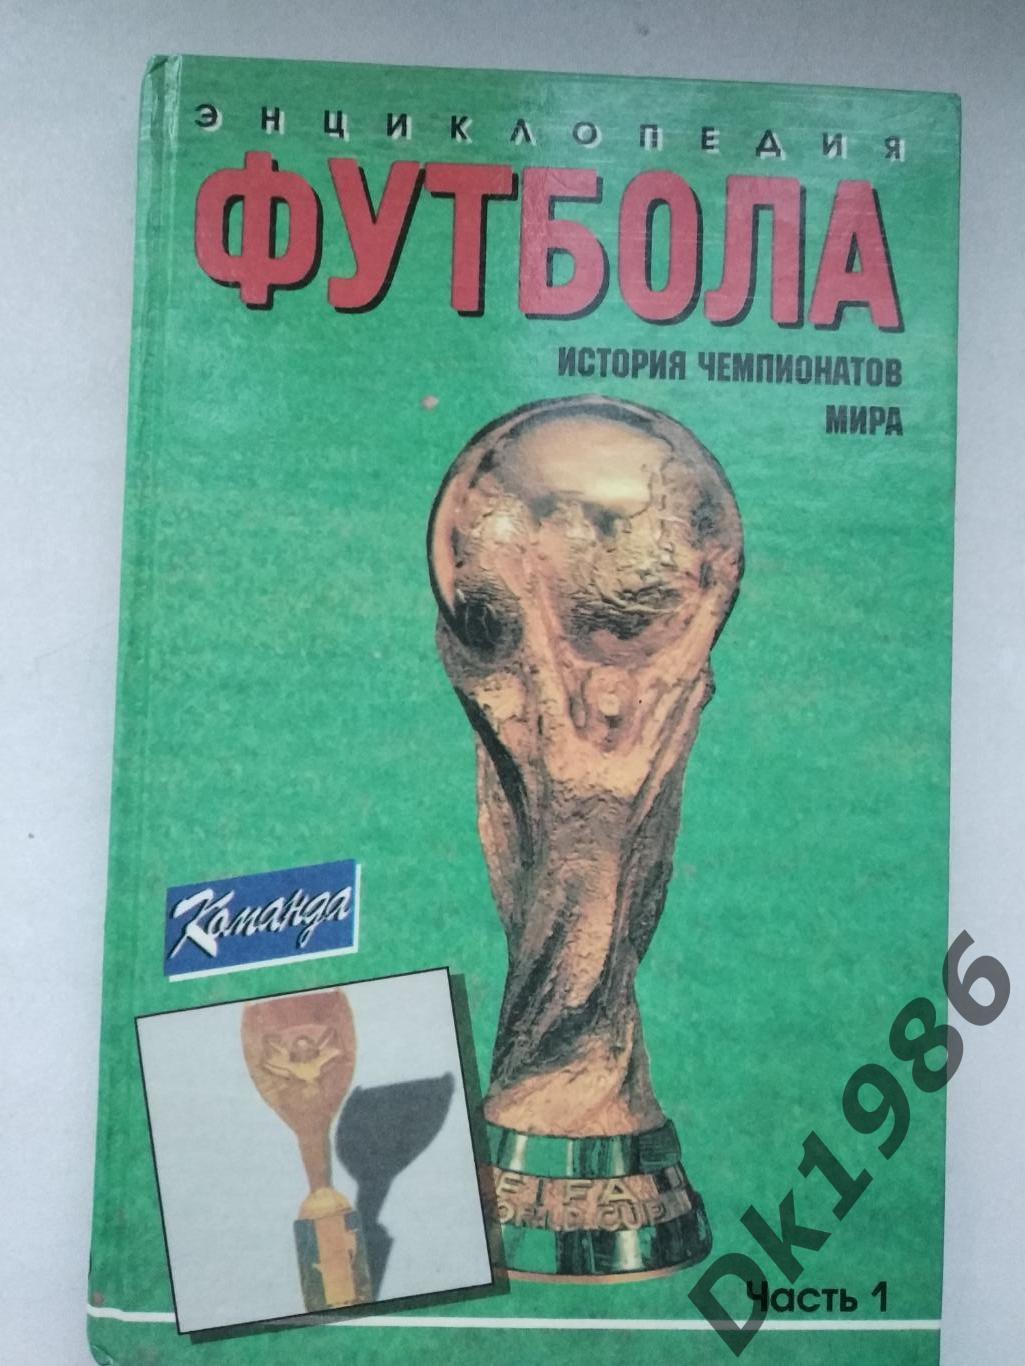 Енциклопедія футболу історія чемпіонатів світу, частина 1